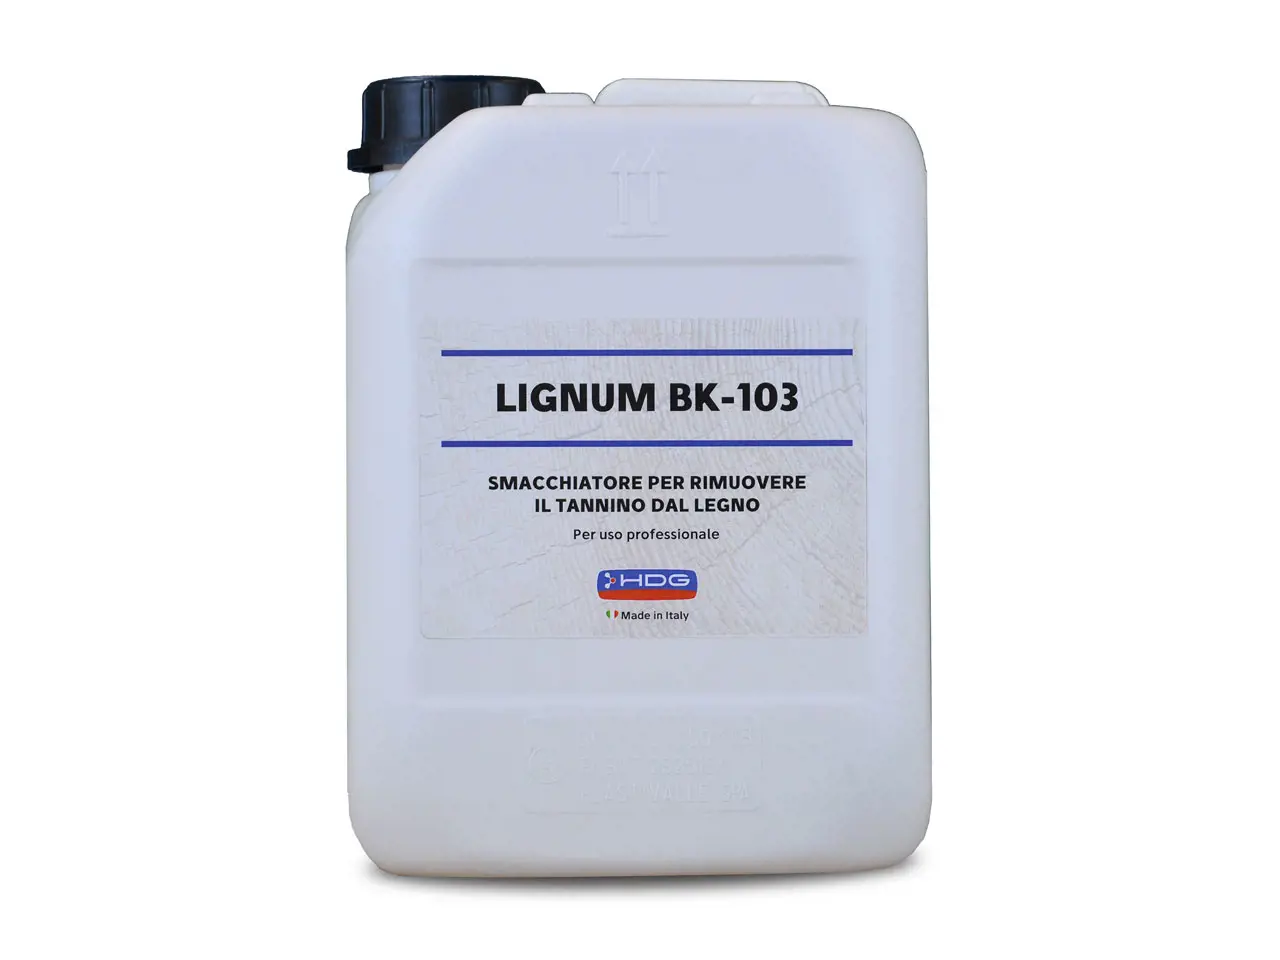 Lignum-bk-103-5-litri.jpg